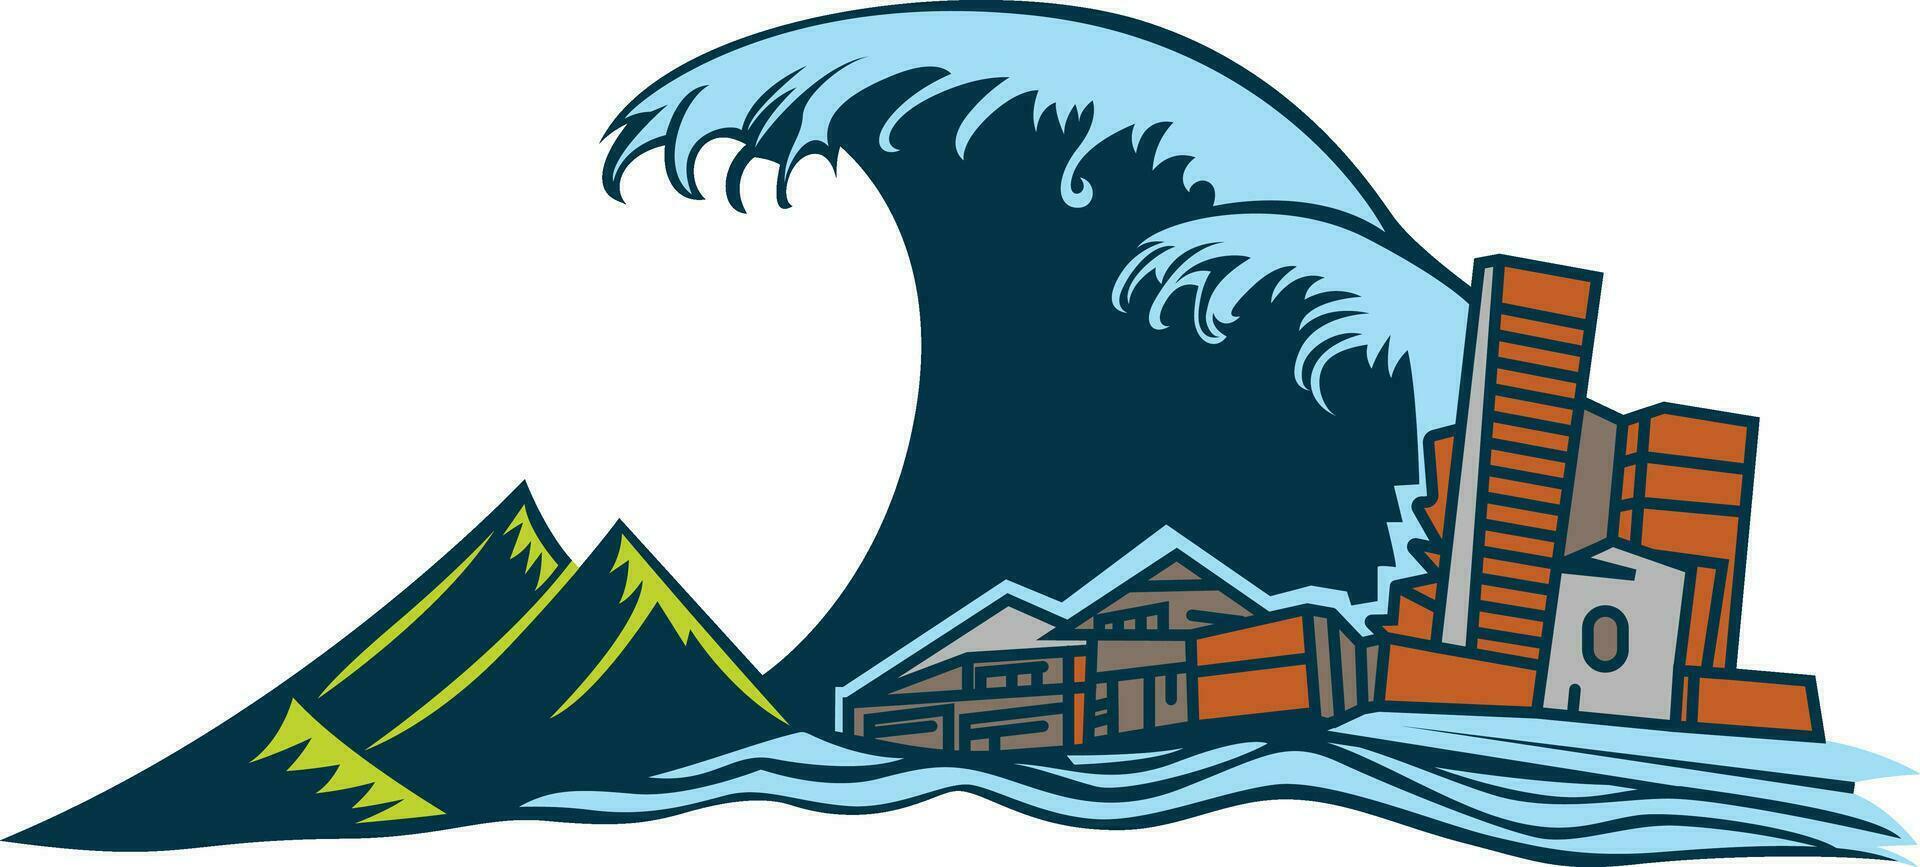 tsunami composition représentant une Naturel catastrophe vecteur illustration, tsunami frappe le sol et détruire Urbain ville Stock vecteur image